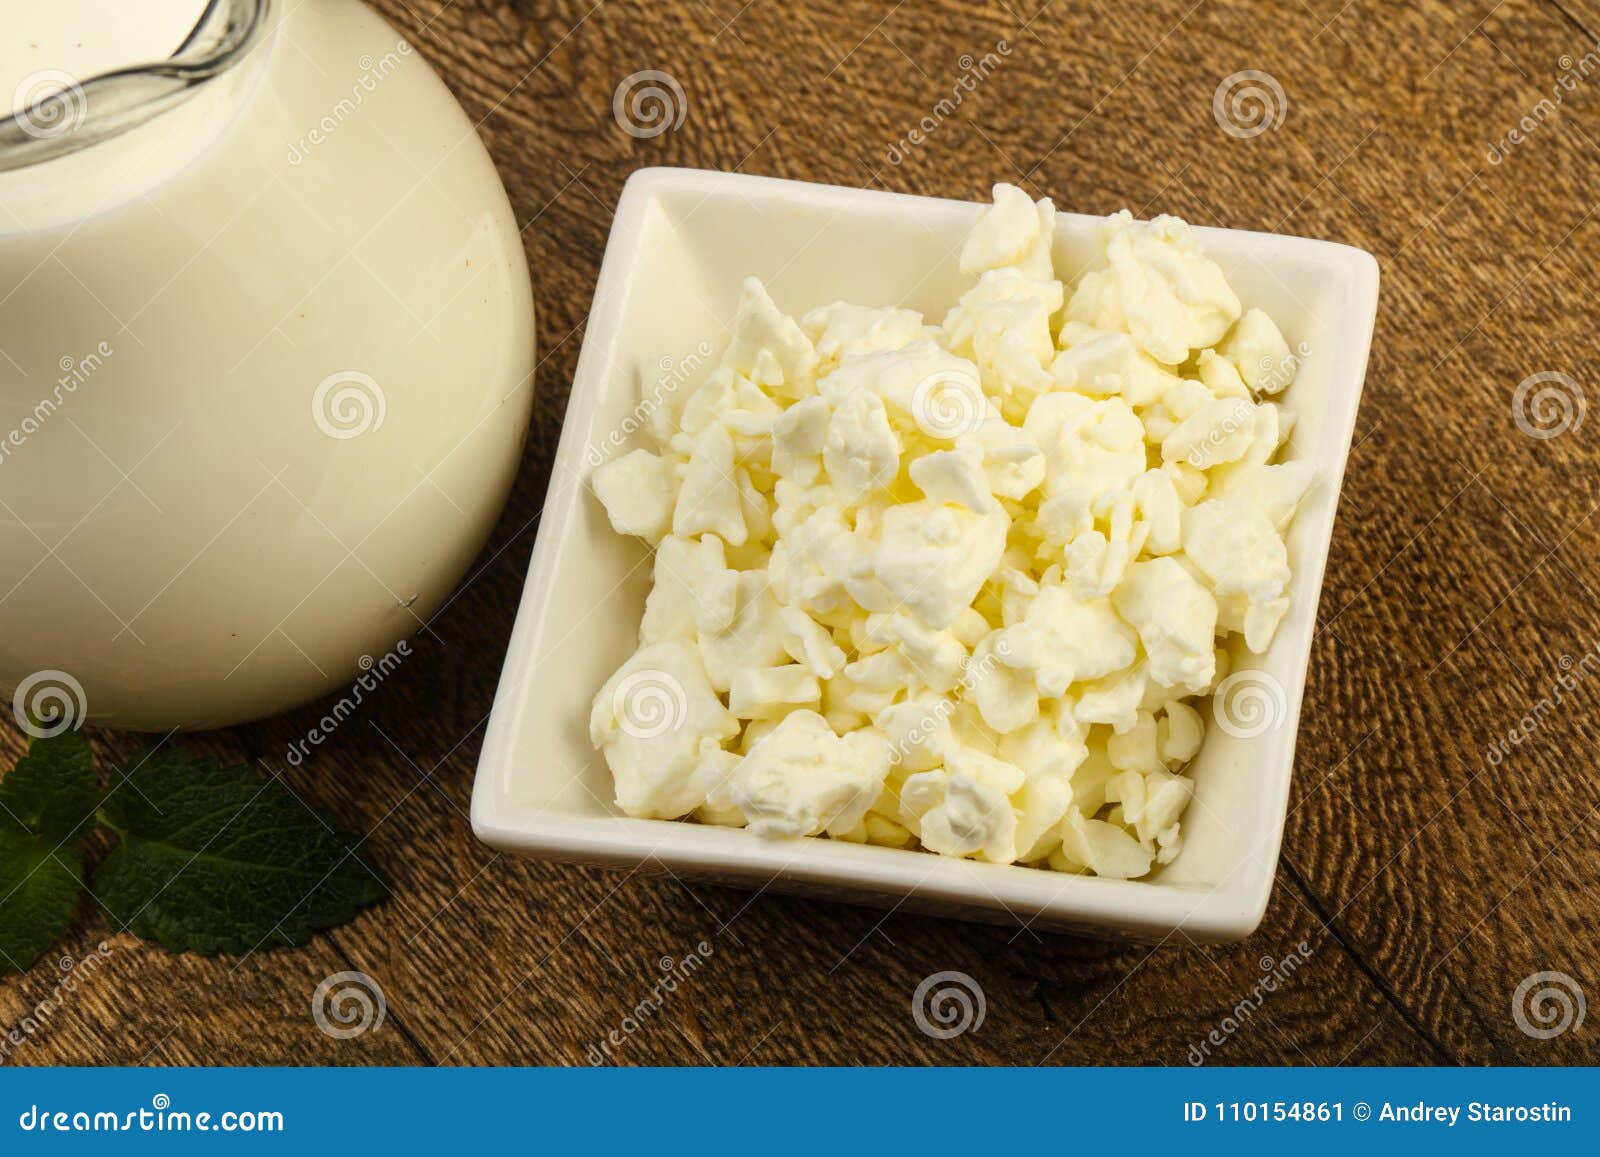 Serowej cheesecloth chałupy świeży wiszący organicznie półkowy rocznik. Chałupa ser w pucharze z mlekiem